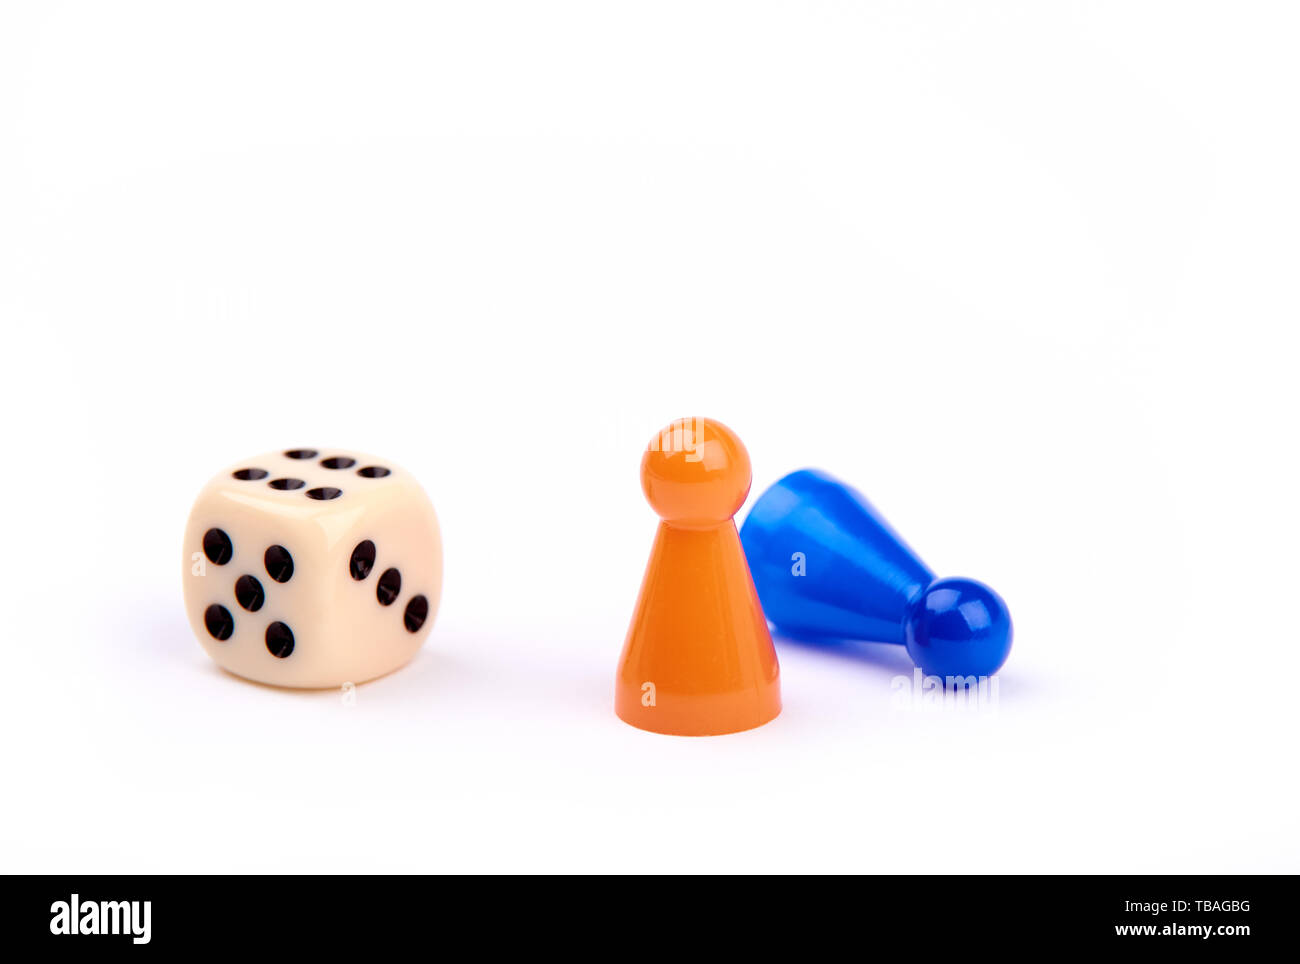 Dado da gioco con punti neri e il numero sei, due pezzi di gioco, arancione in piedi come vincitore e blue menzogna come loser - isolato su sfondo bianco Foto Stock